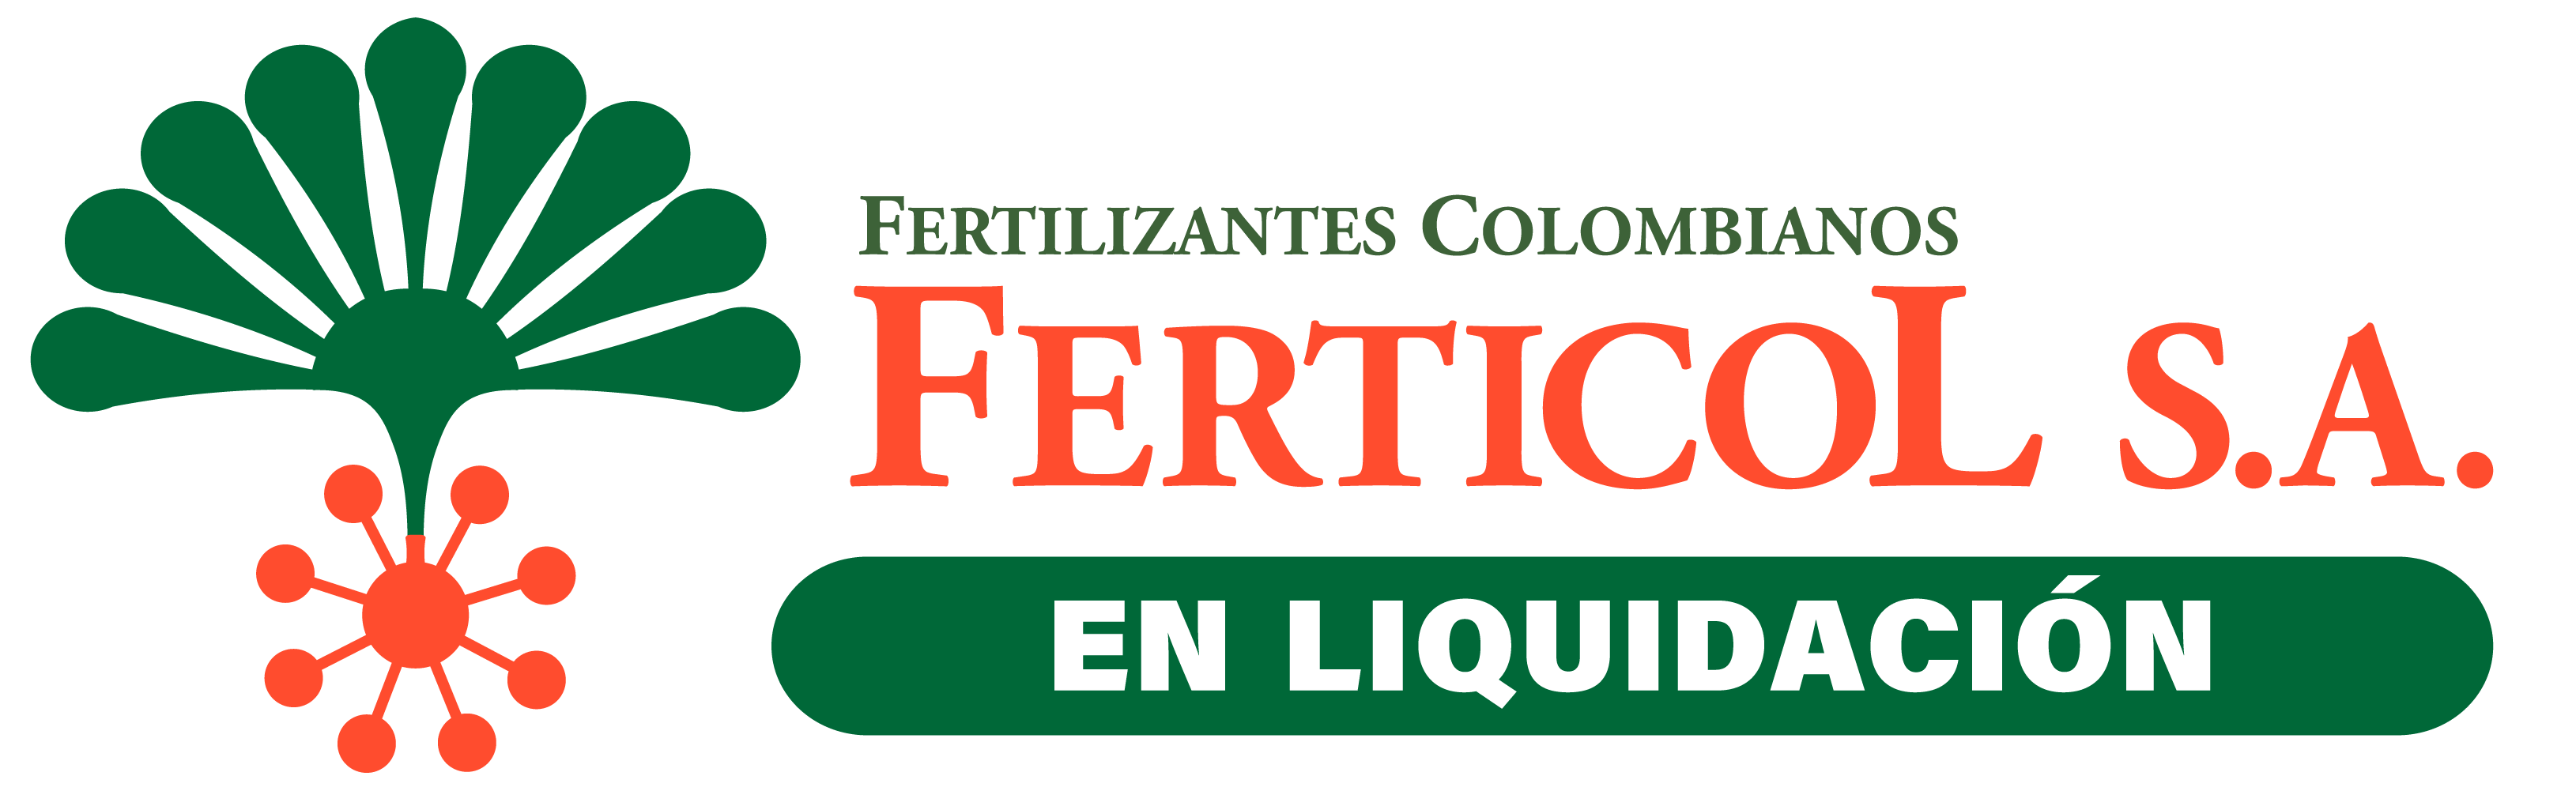 LogoFerticol-EnLiquidacion1